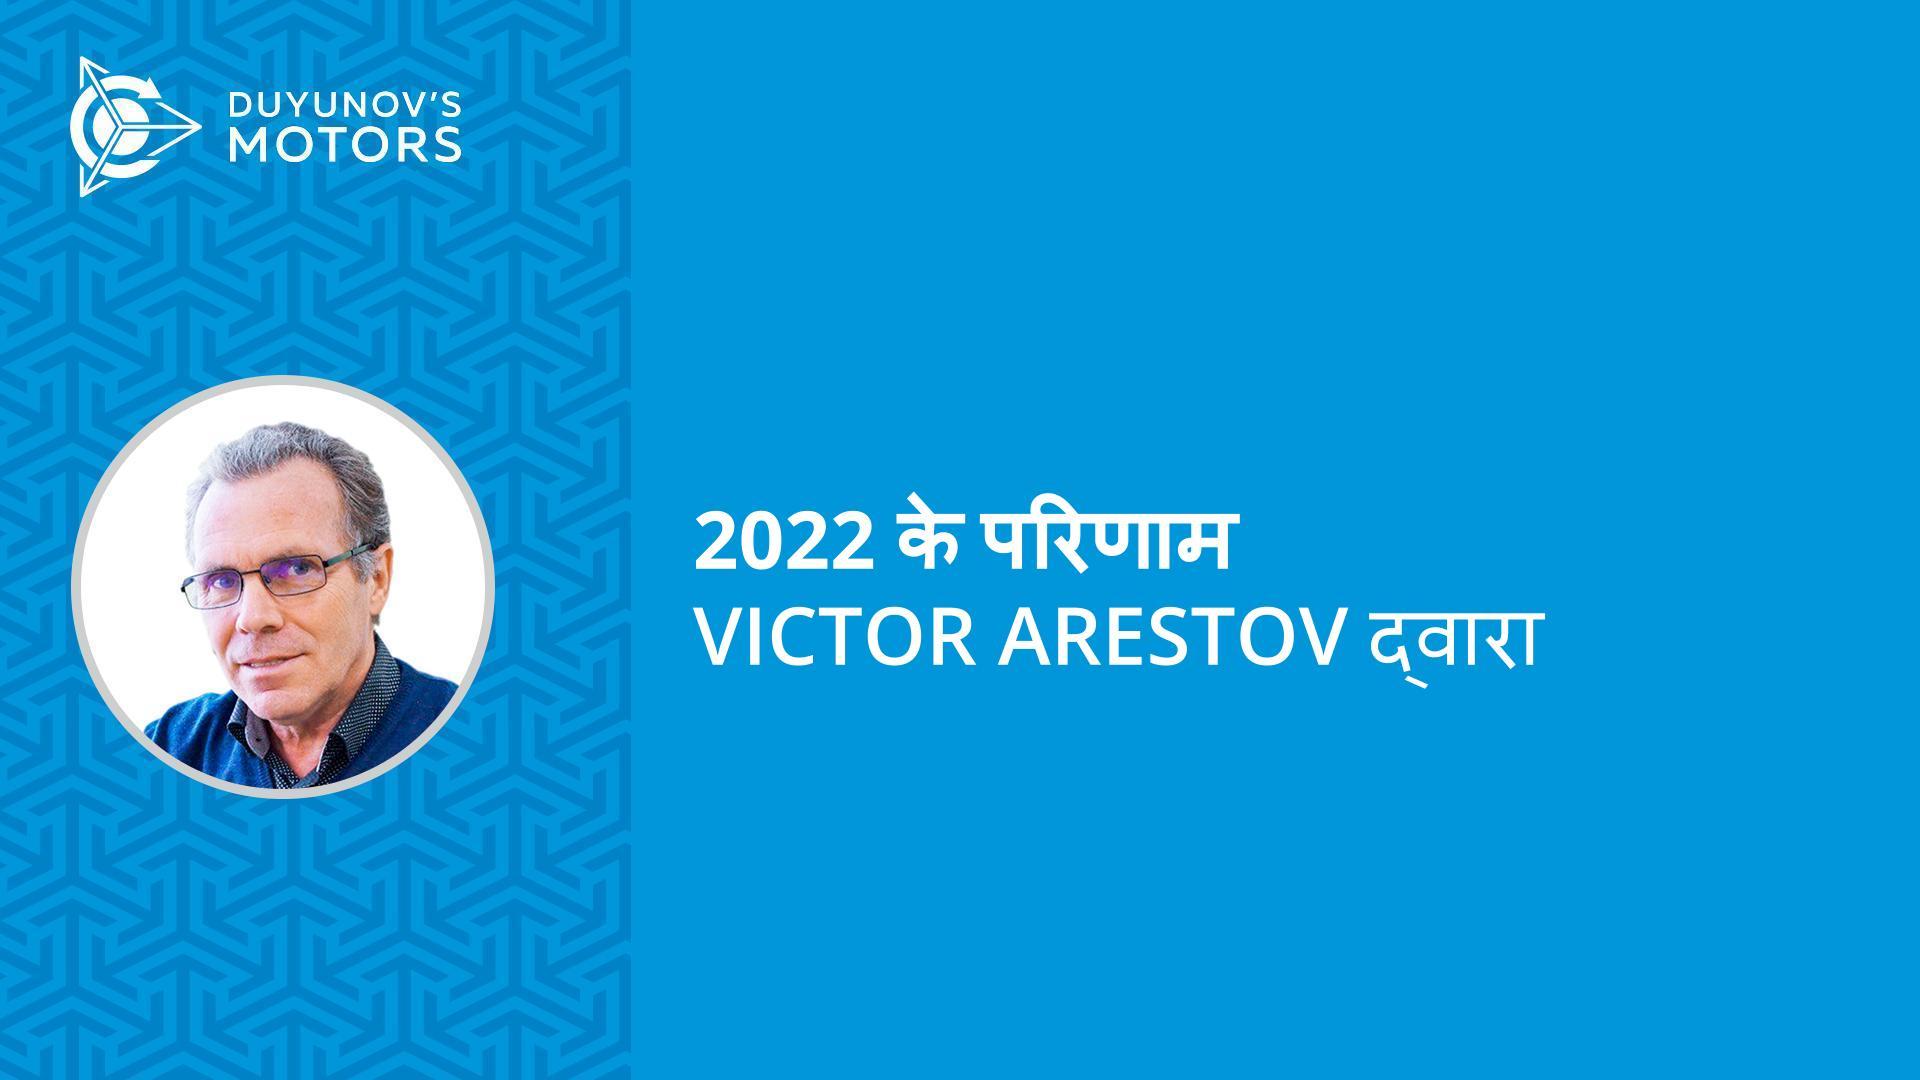 नए विकास और "Slavyanka" प्रौद्योगिकी के प्रमोशन: Victor Arestov द्वारा 2022 के परिणाम